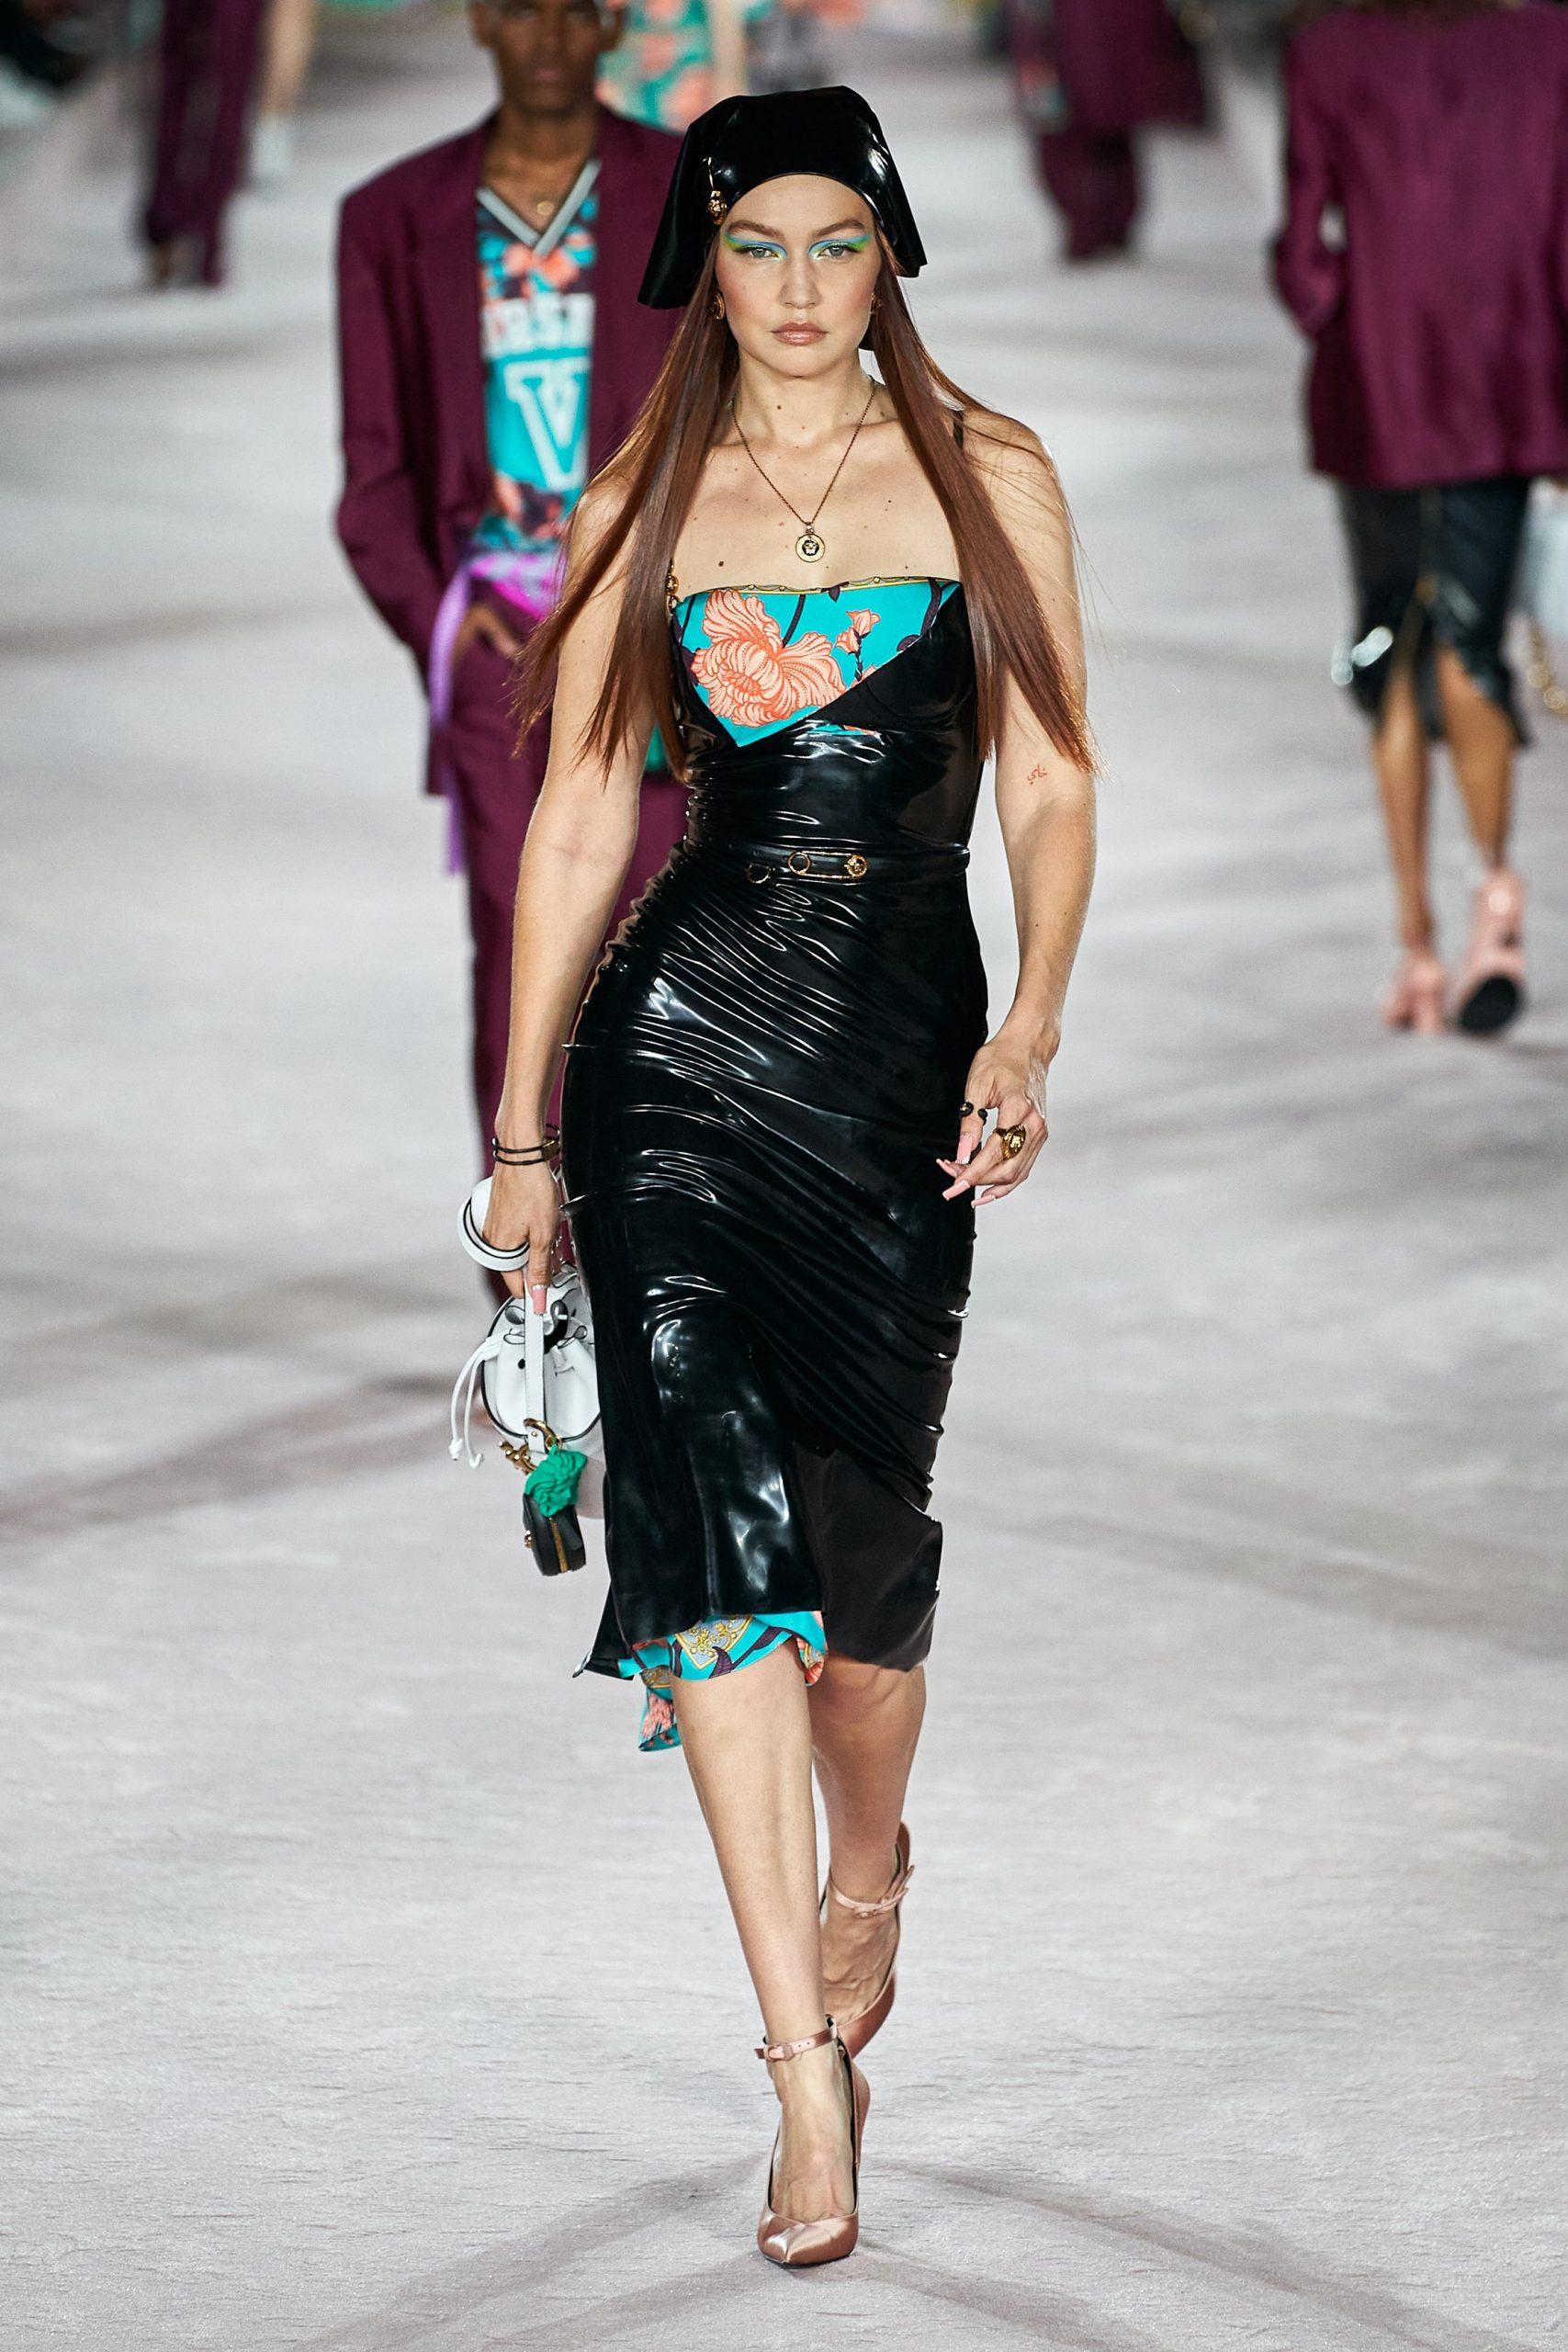 Дуа Липа дебютировала на весеннем показе Versace